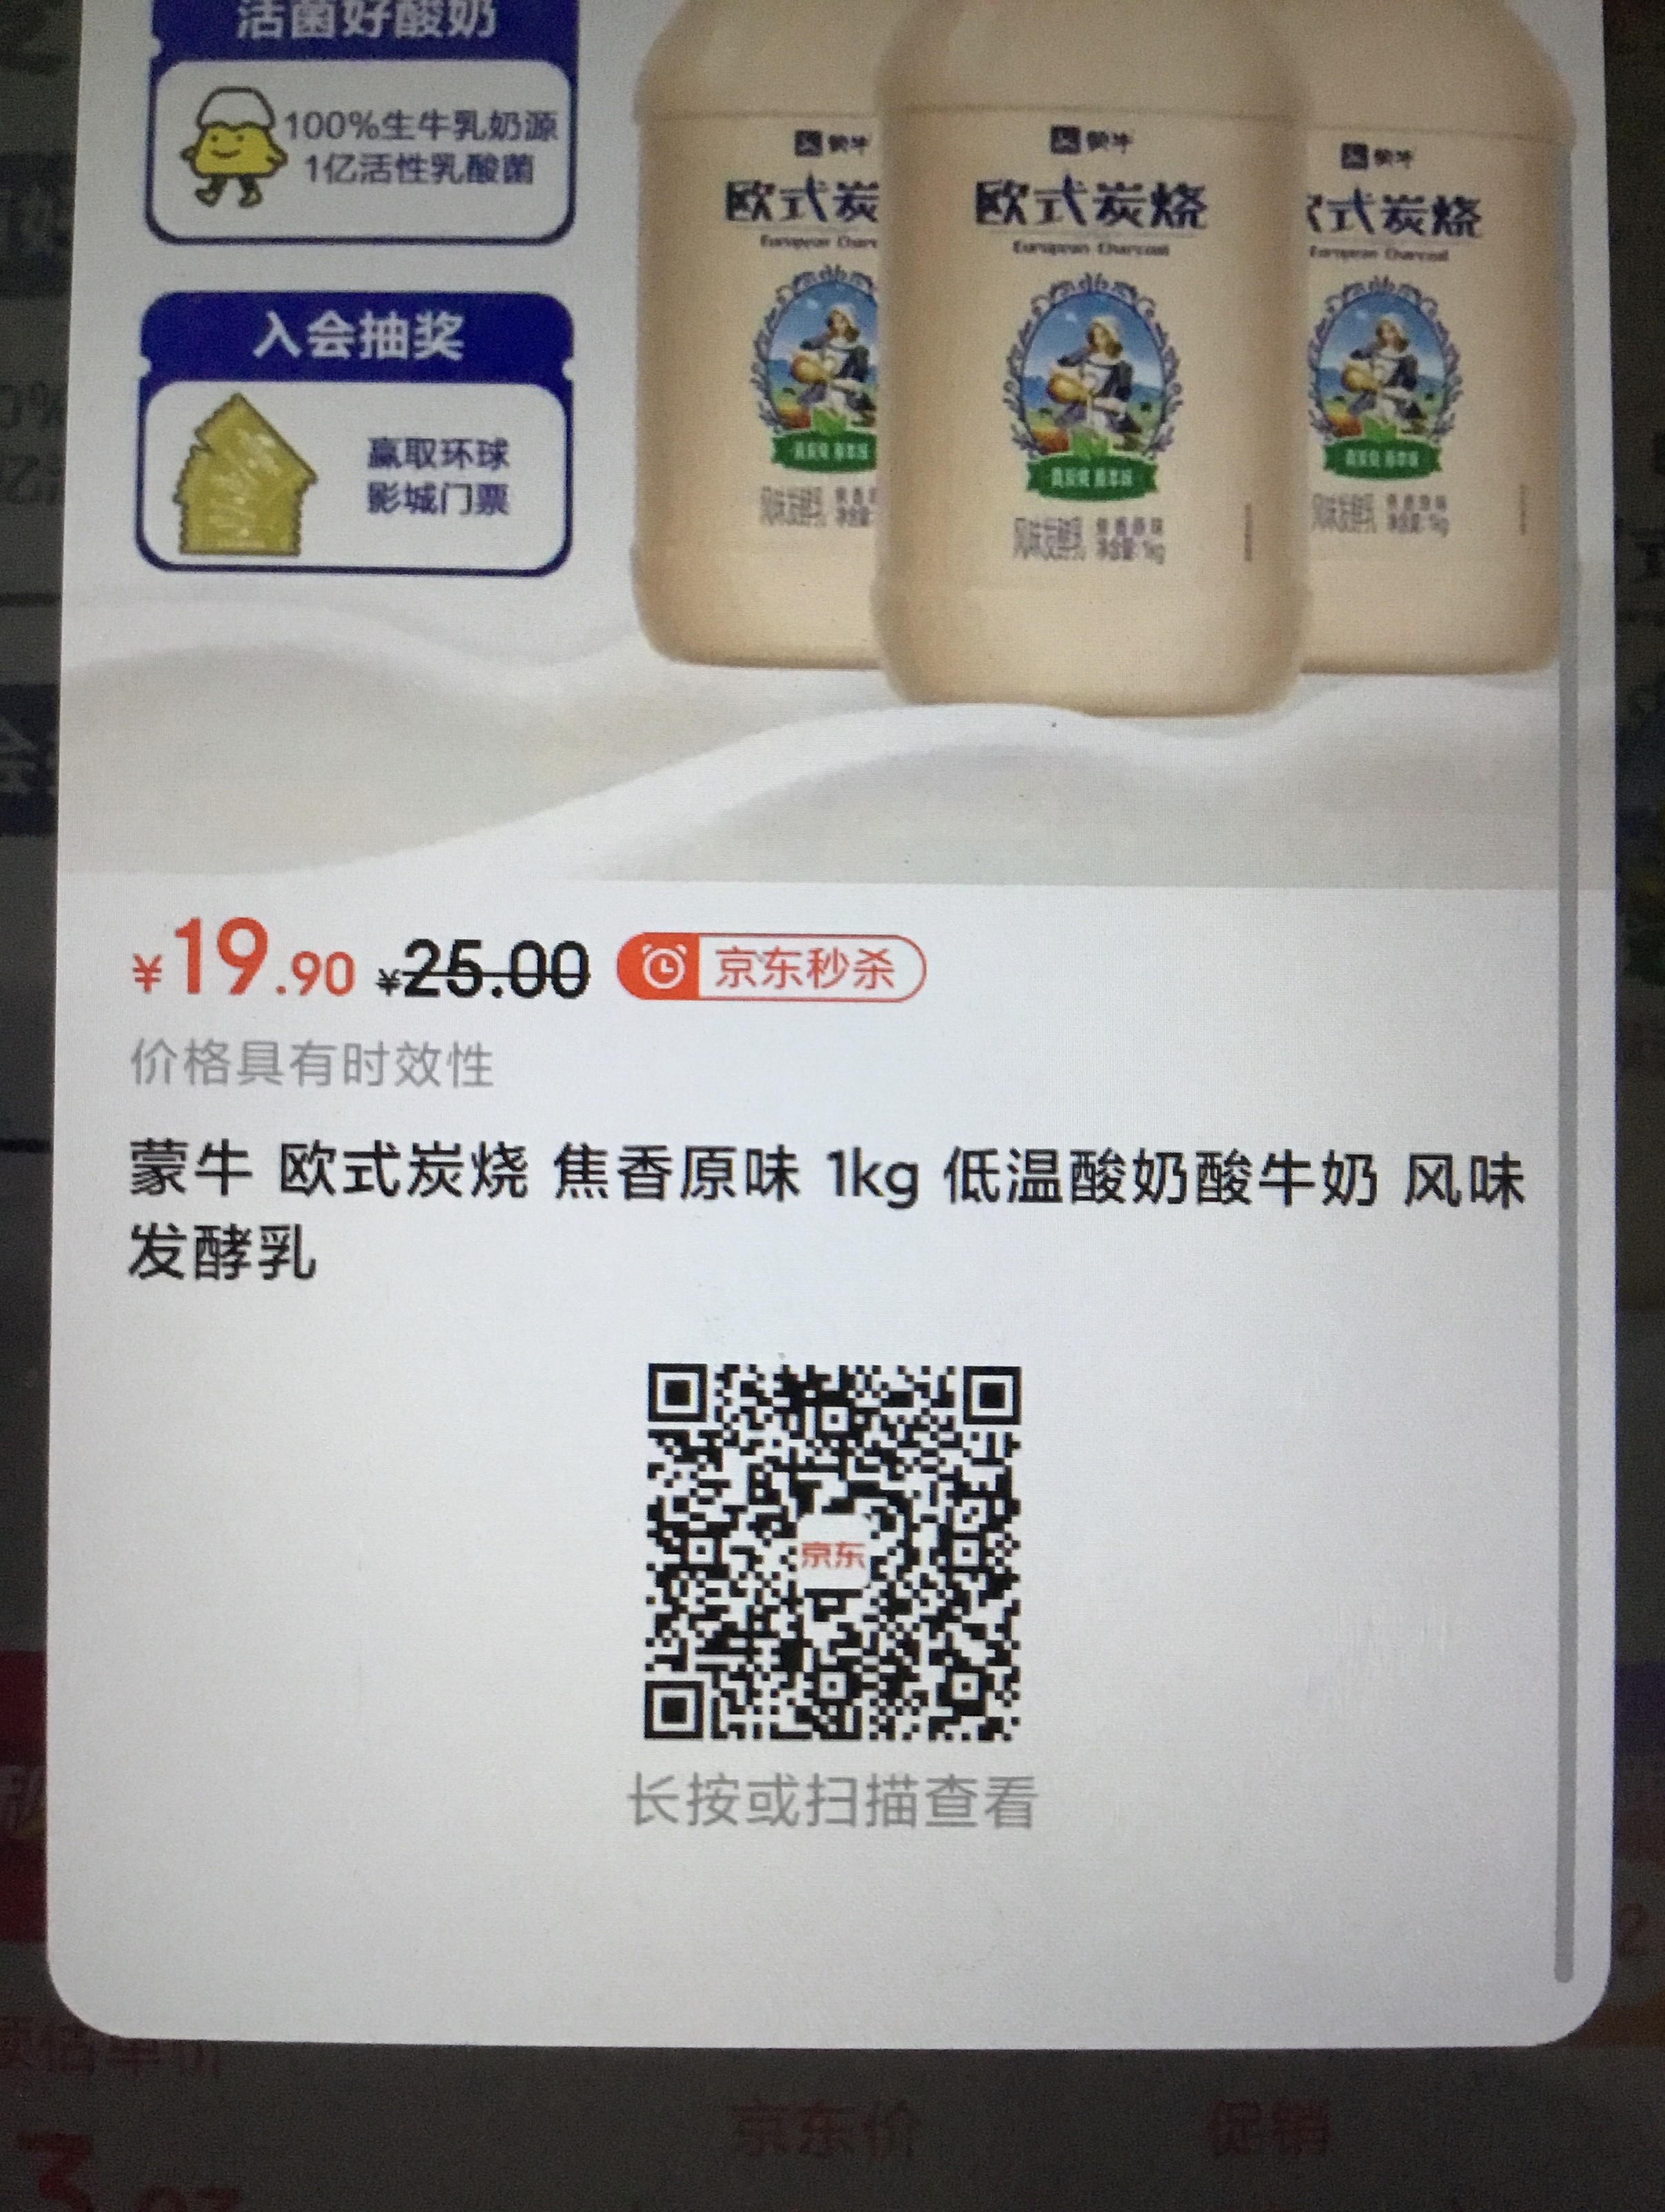 有券没地方用的 酸奶买起来-惠小助(52huixz.com)